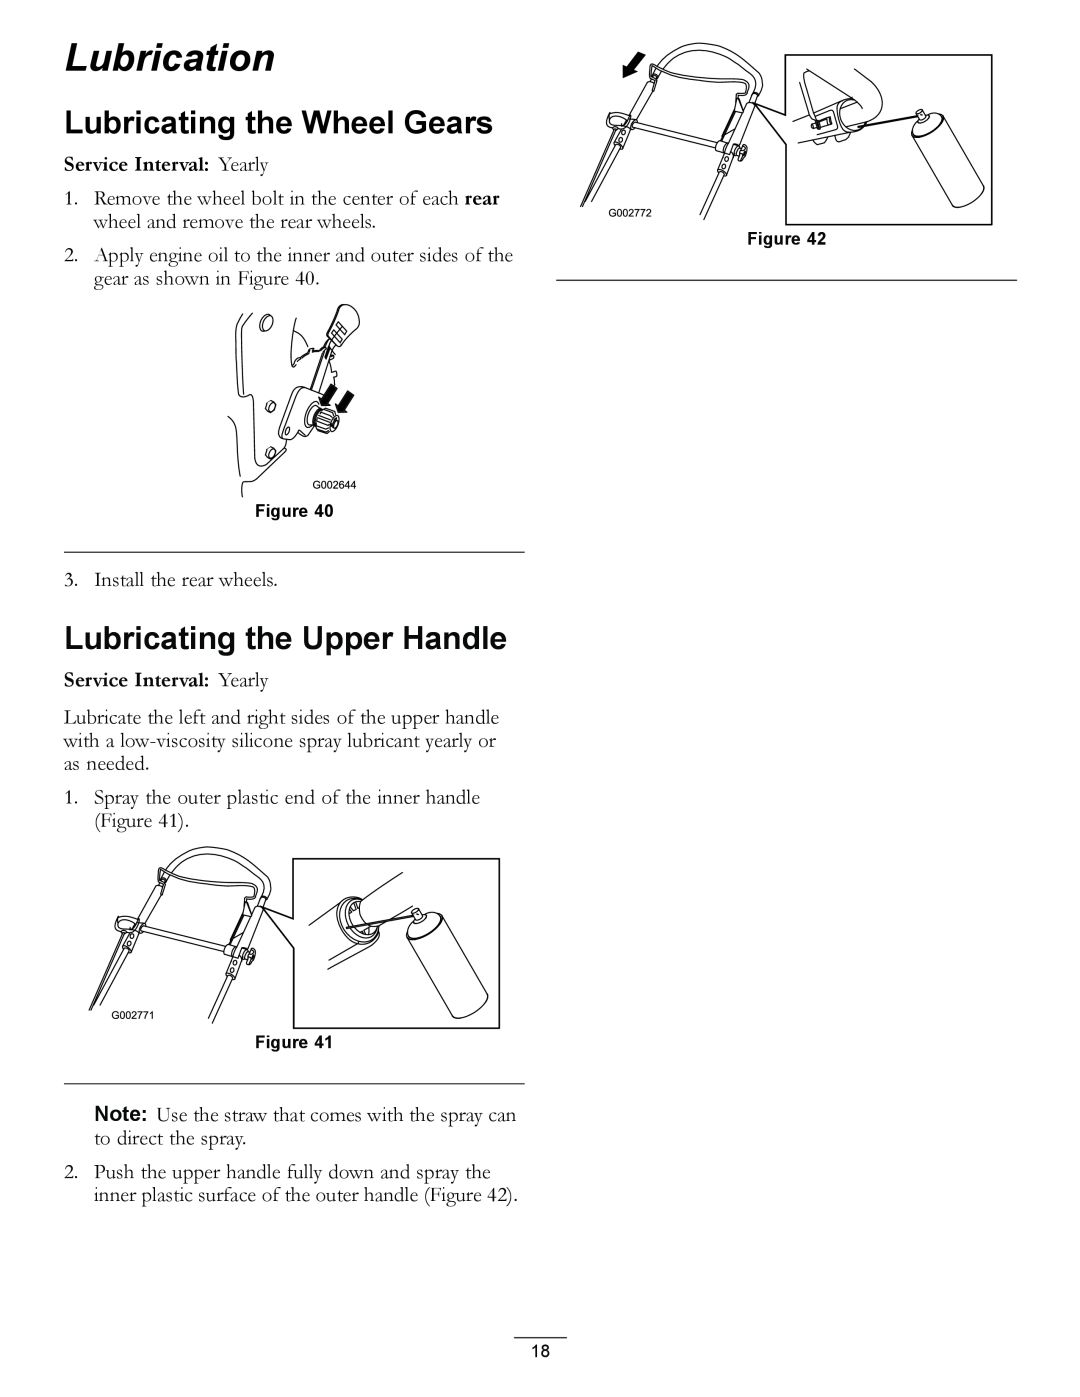 Hayter Mowers R53S manual Lubrication, Lubricating the Wheel Gears, Lubricating the Upper Handle 